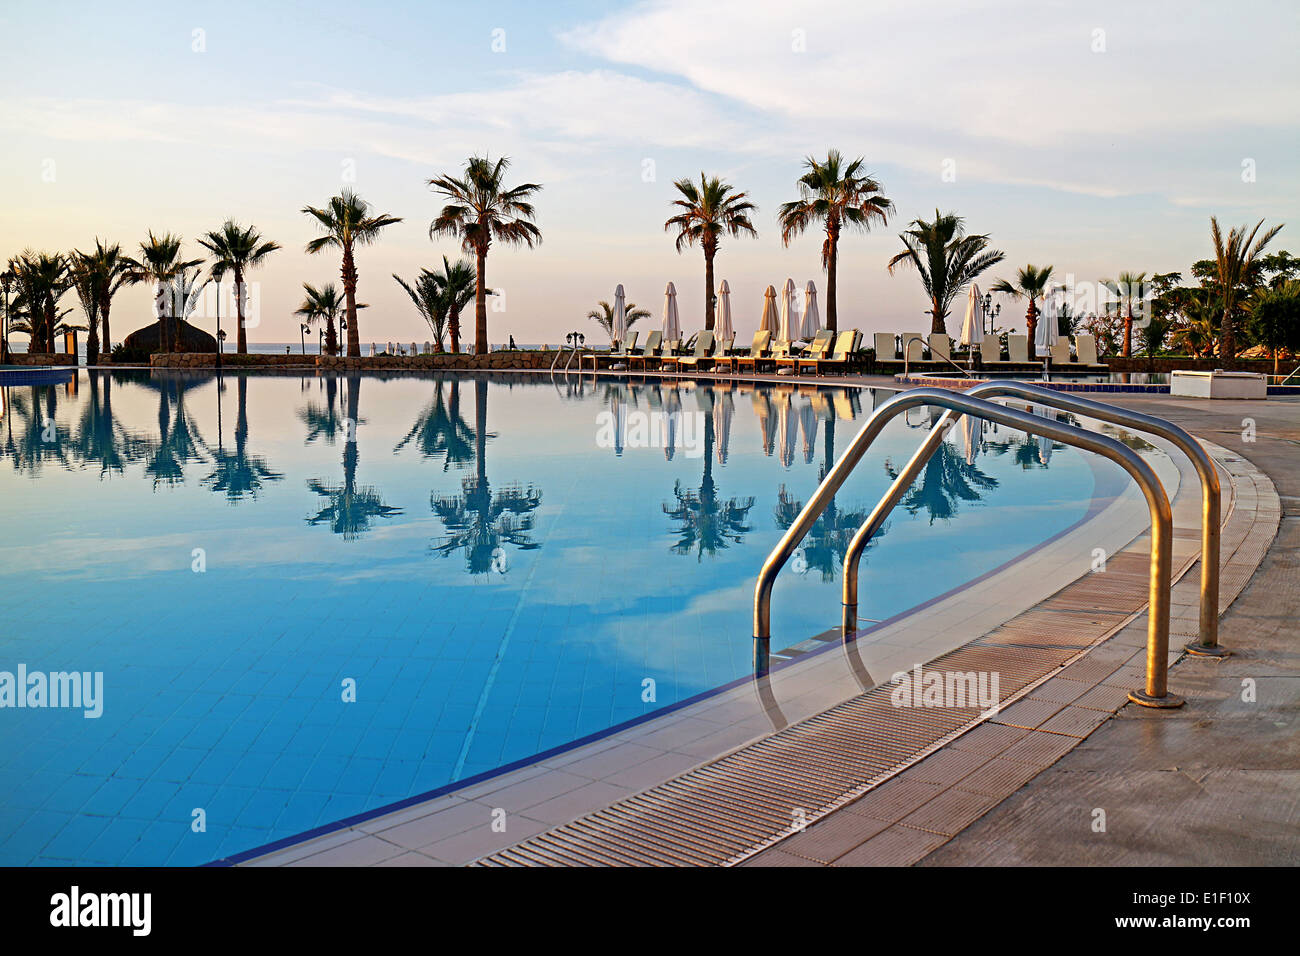 La piscina del complejo tropical con palmeras Foto de stock